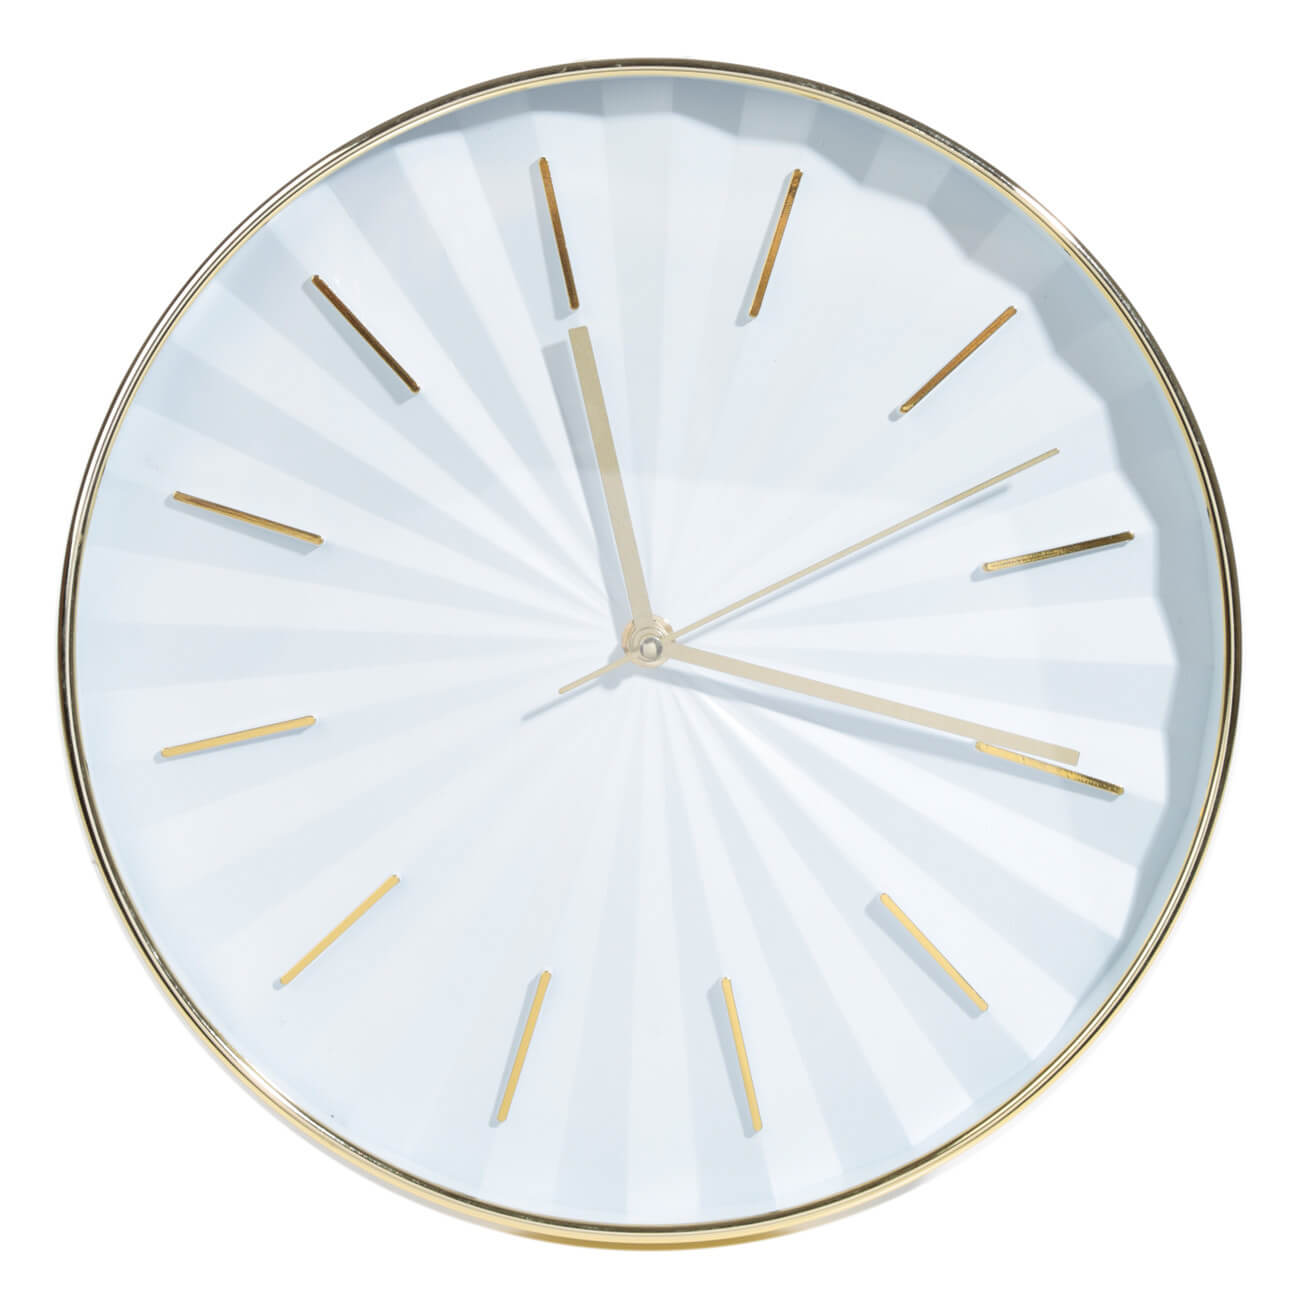 Часы настенные, 30 см, пластик, круглые, золотисто-белые, Fantastic gold белые часы rst